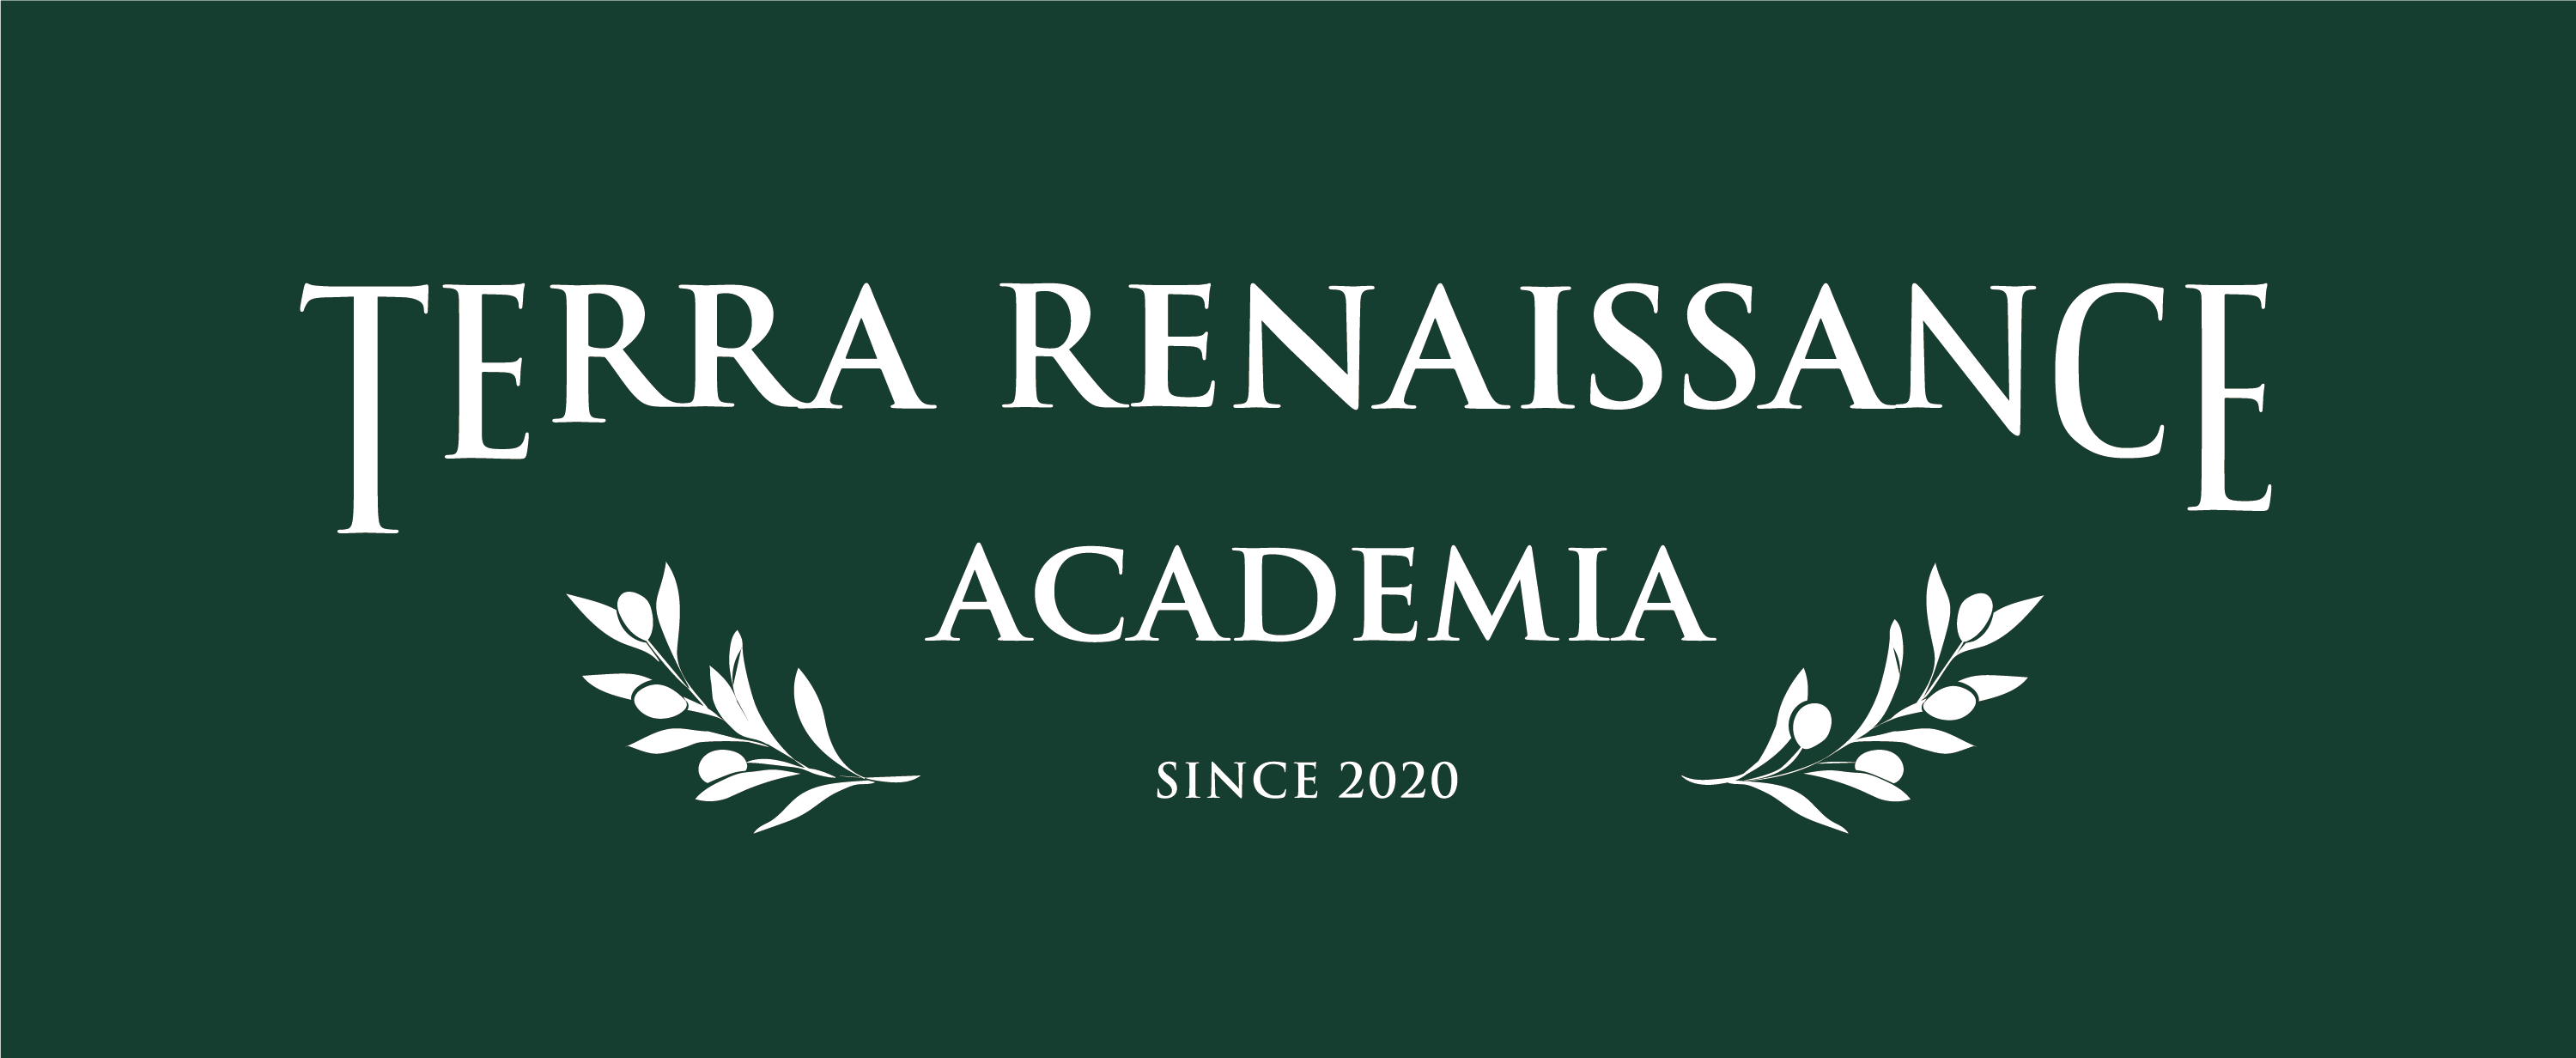 Terra Renaisaance Academia 2020 